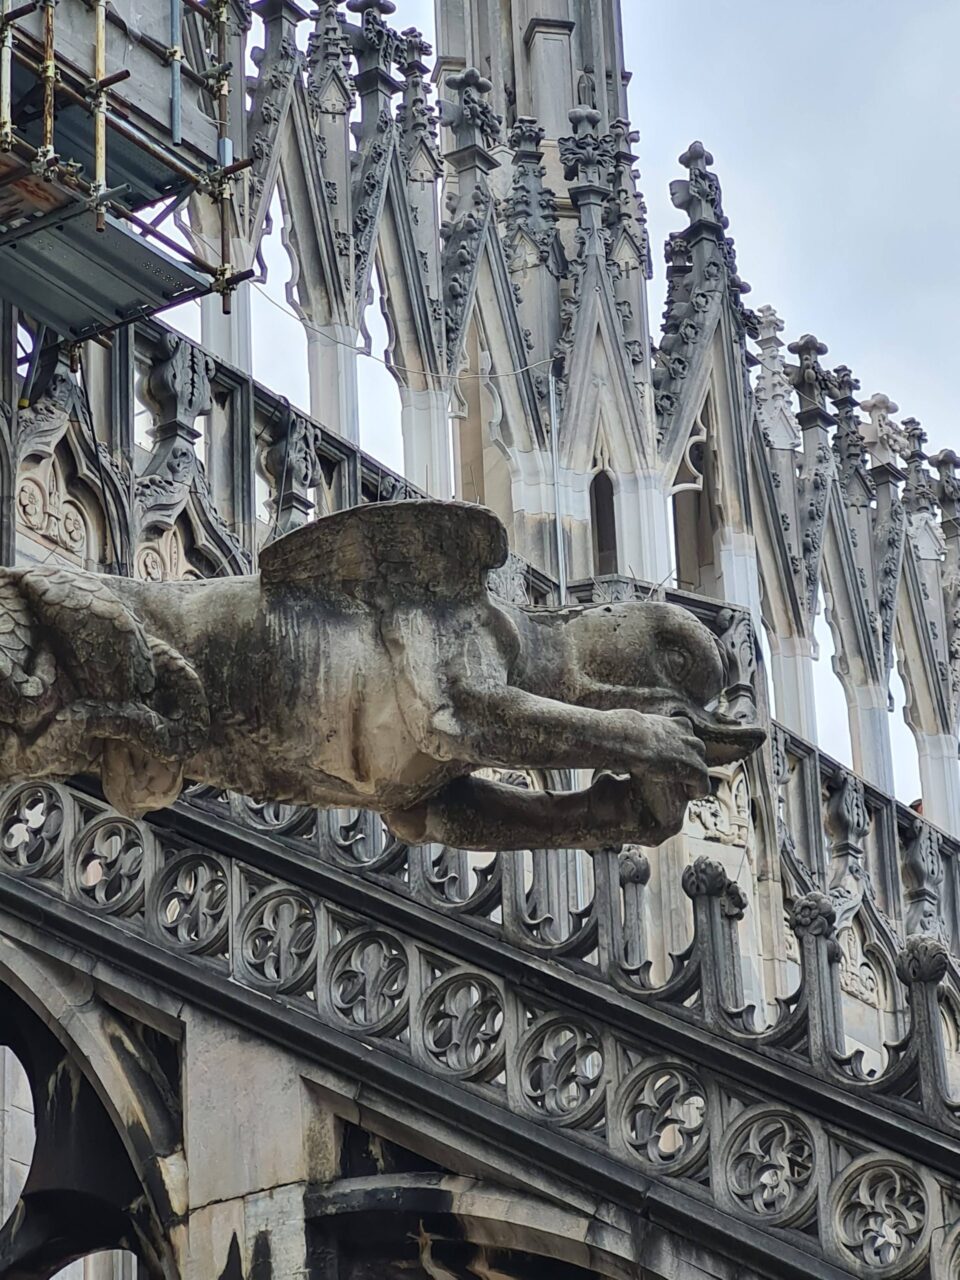 Se la Cattedrale di Notre Dame è ancora sottoposta a ristrutturazione durante il vostro viaggio a Parigi coi bambini, potete sempre consolarvi andando a vedere le buffe e un po' inquietanti gargoyle del Duomo di Milano!